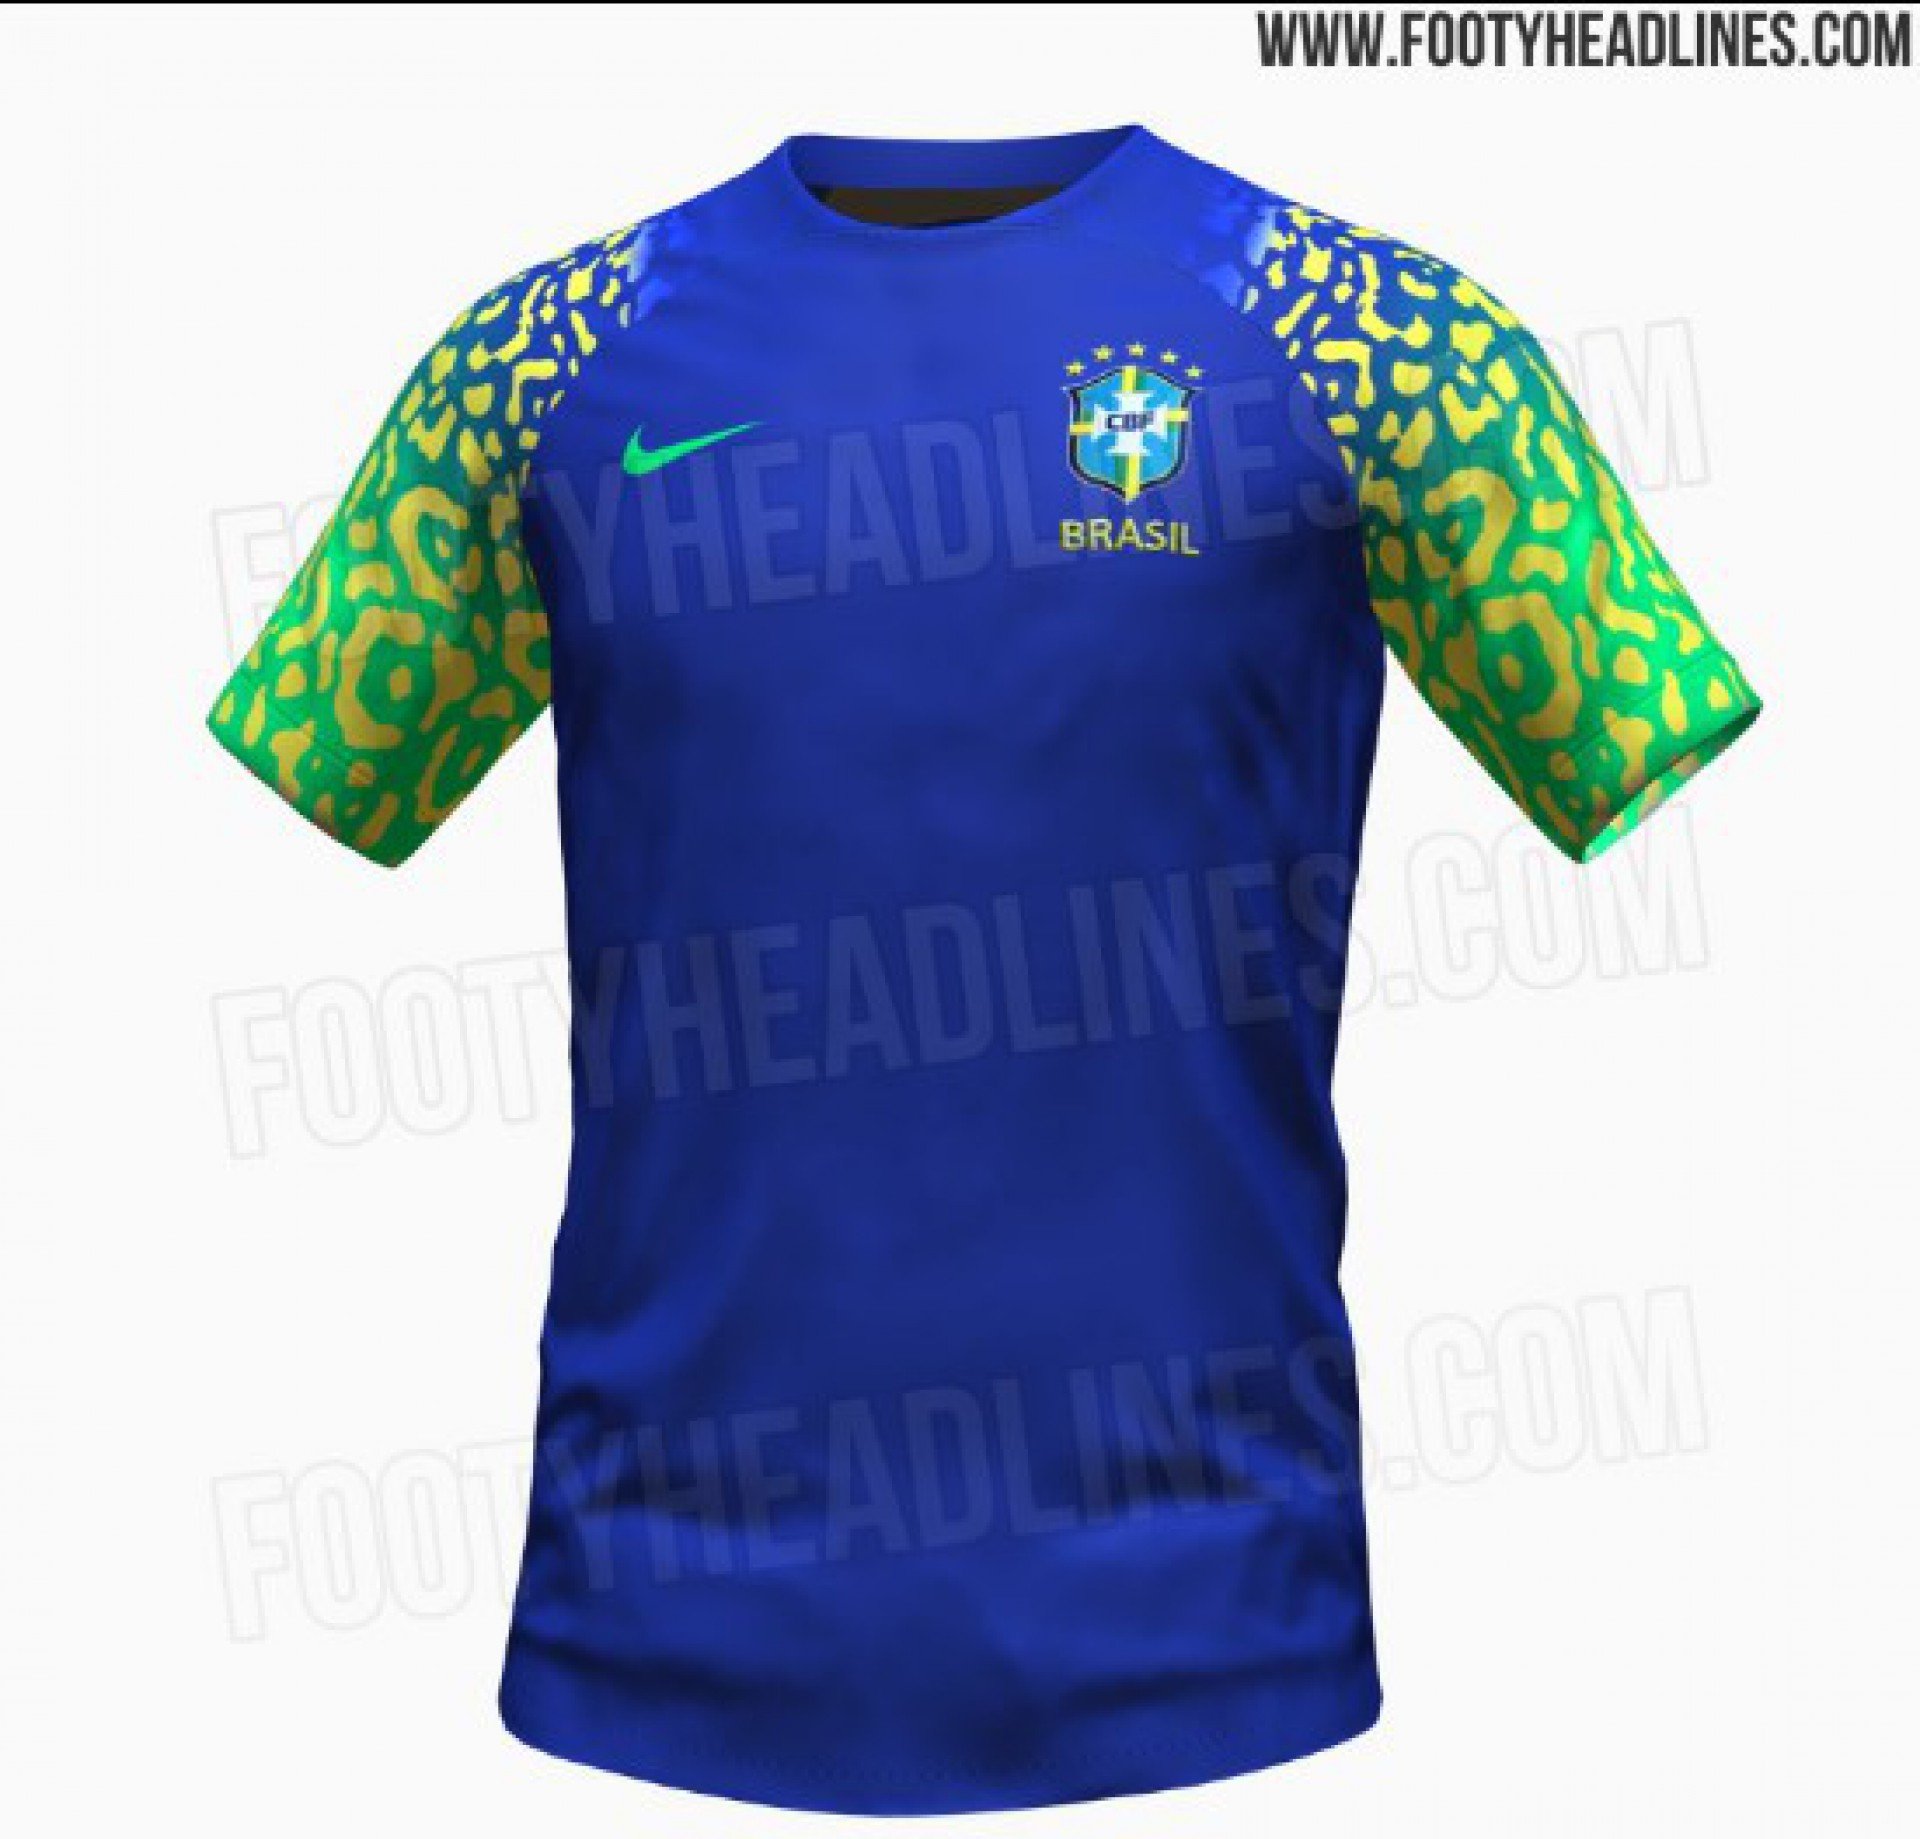 Site divulga detalhes do segundo uniforme da Seleção Brasileira